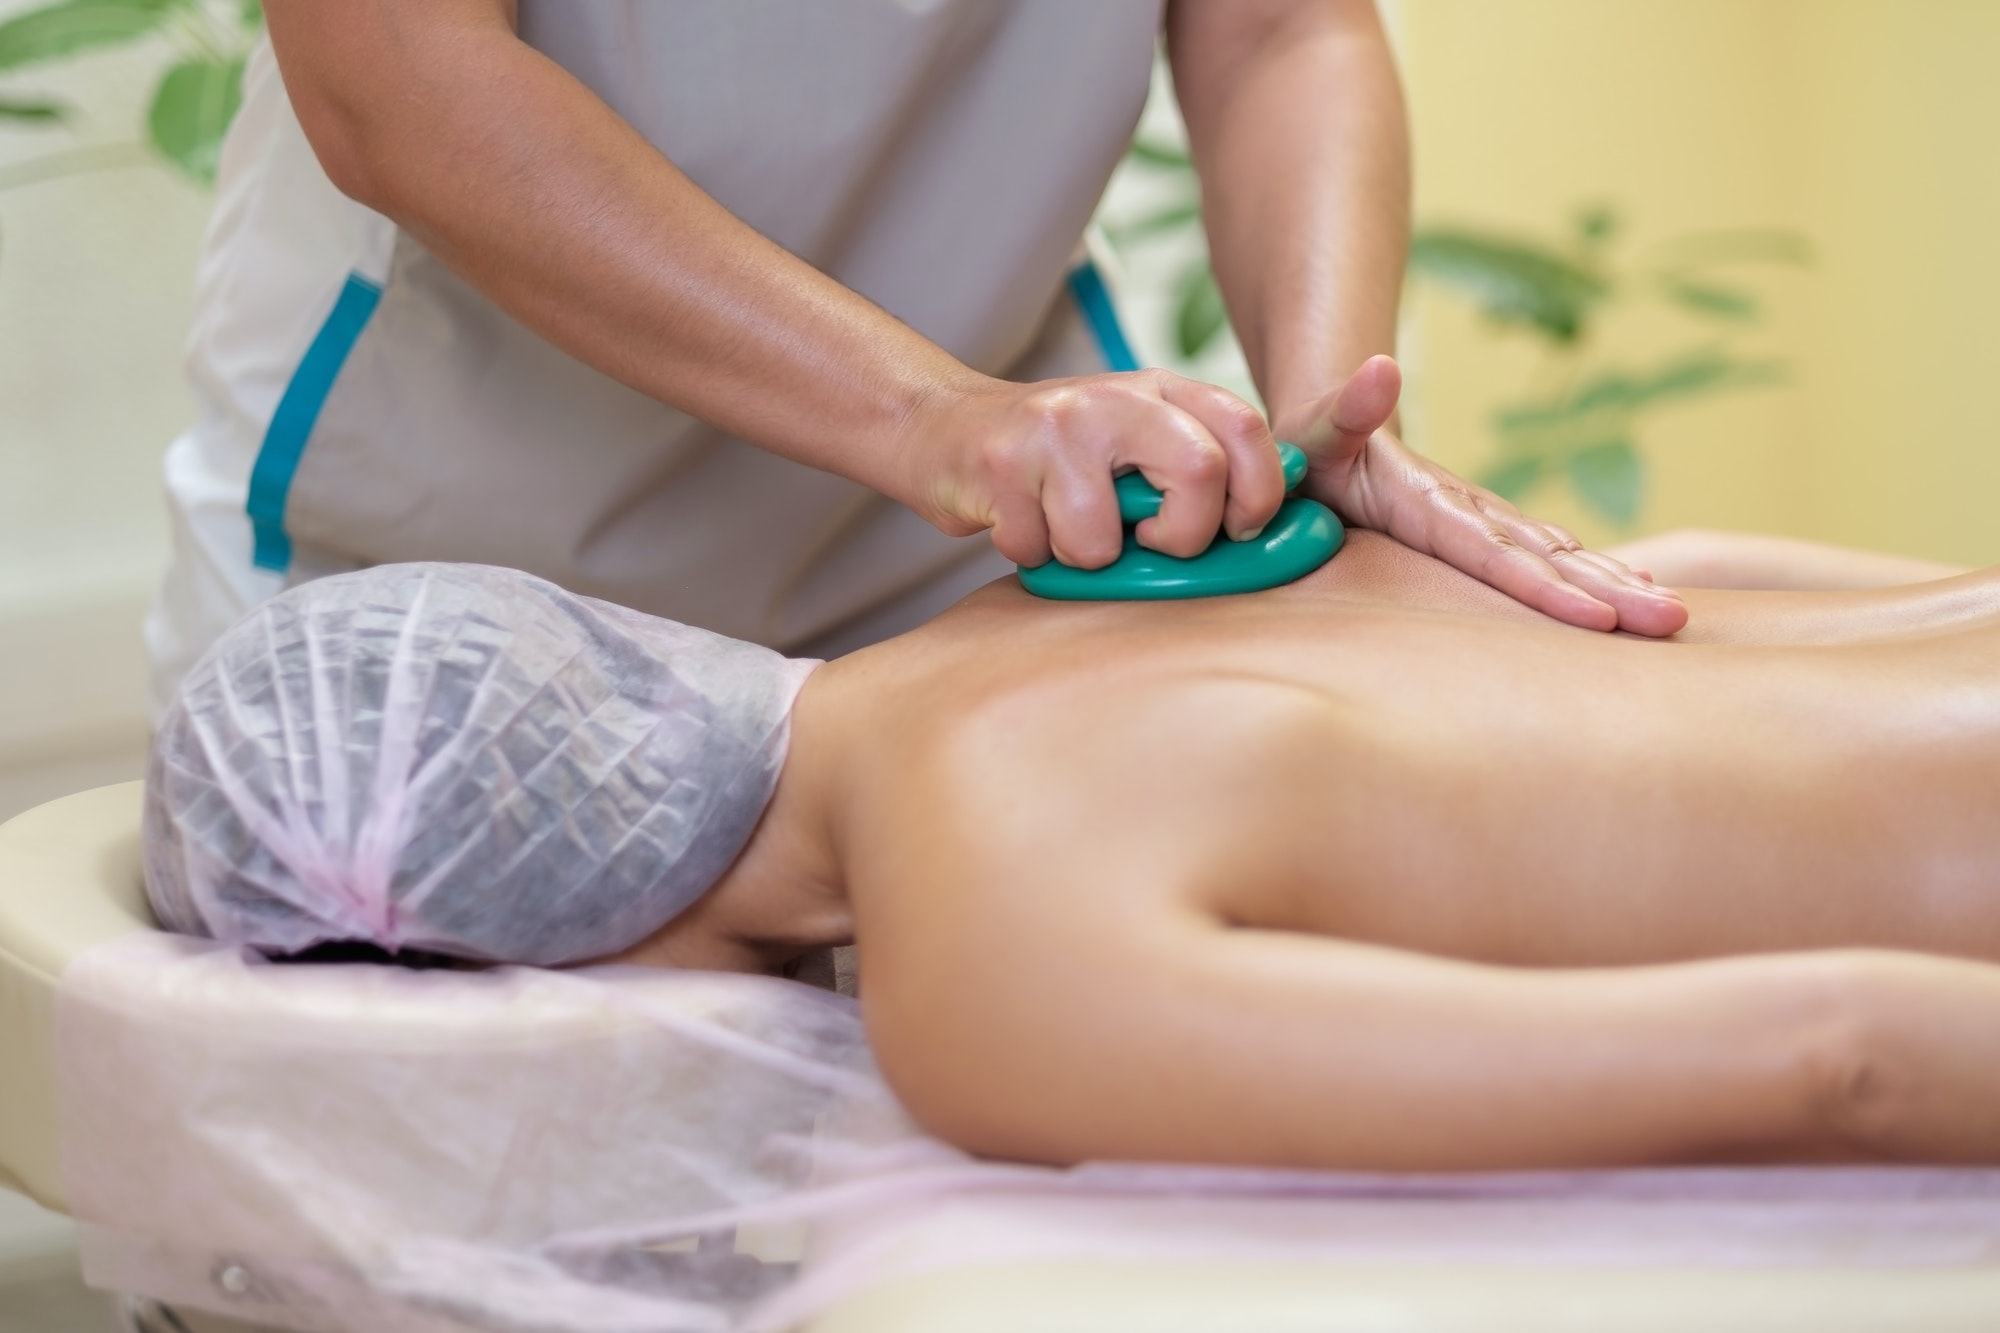 Massage therapist massaging young woman. Vacuum massage